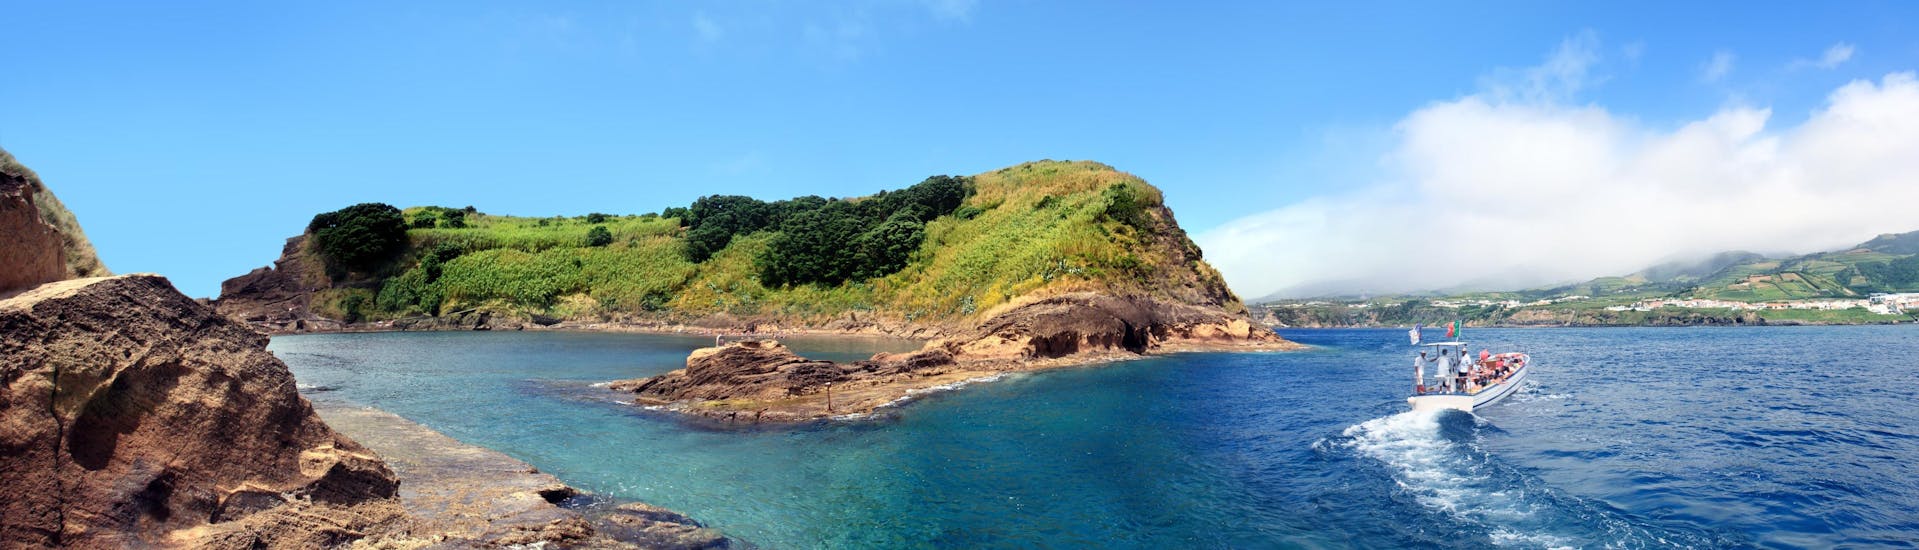 Vue de l'îlot de Vila Franca do Campo, une destination populaire pour les excursions en bateau aux Açores.